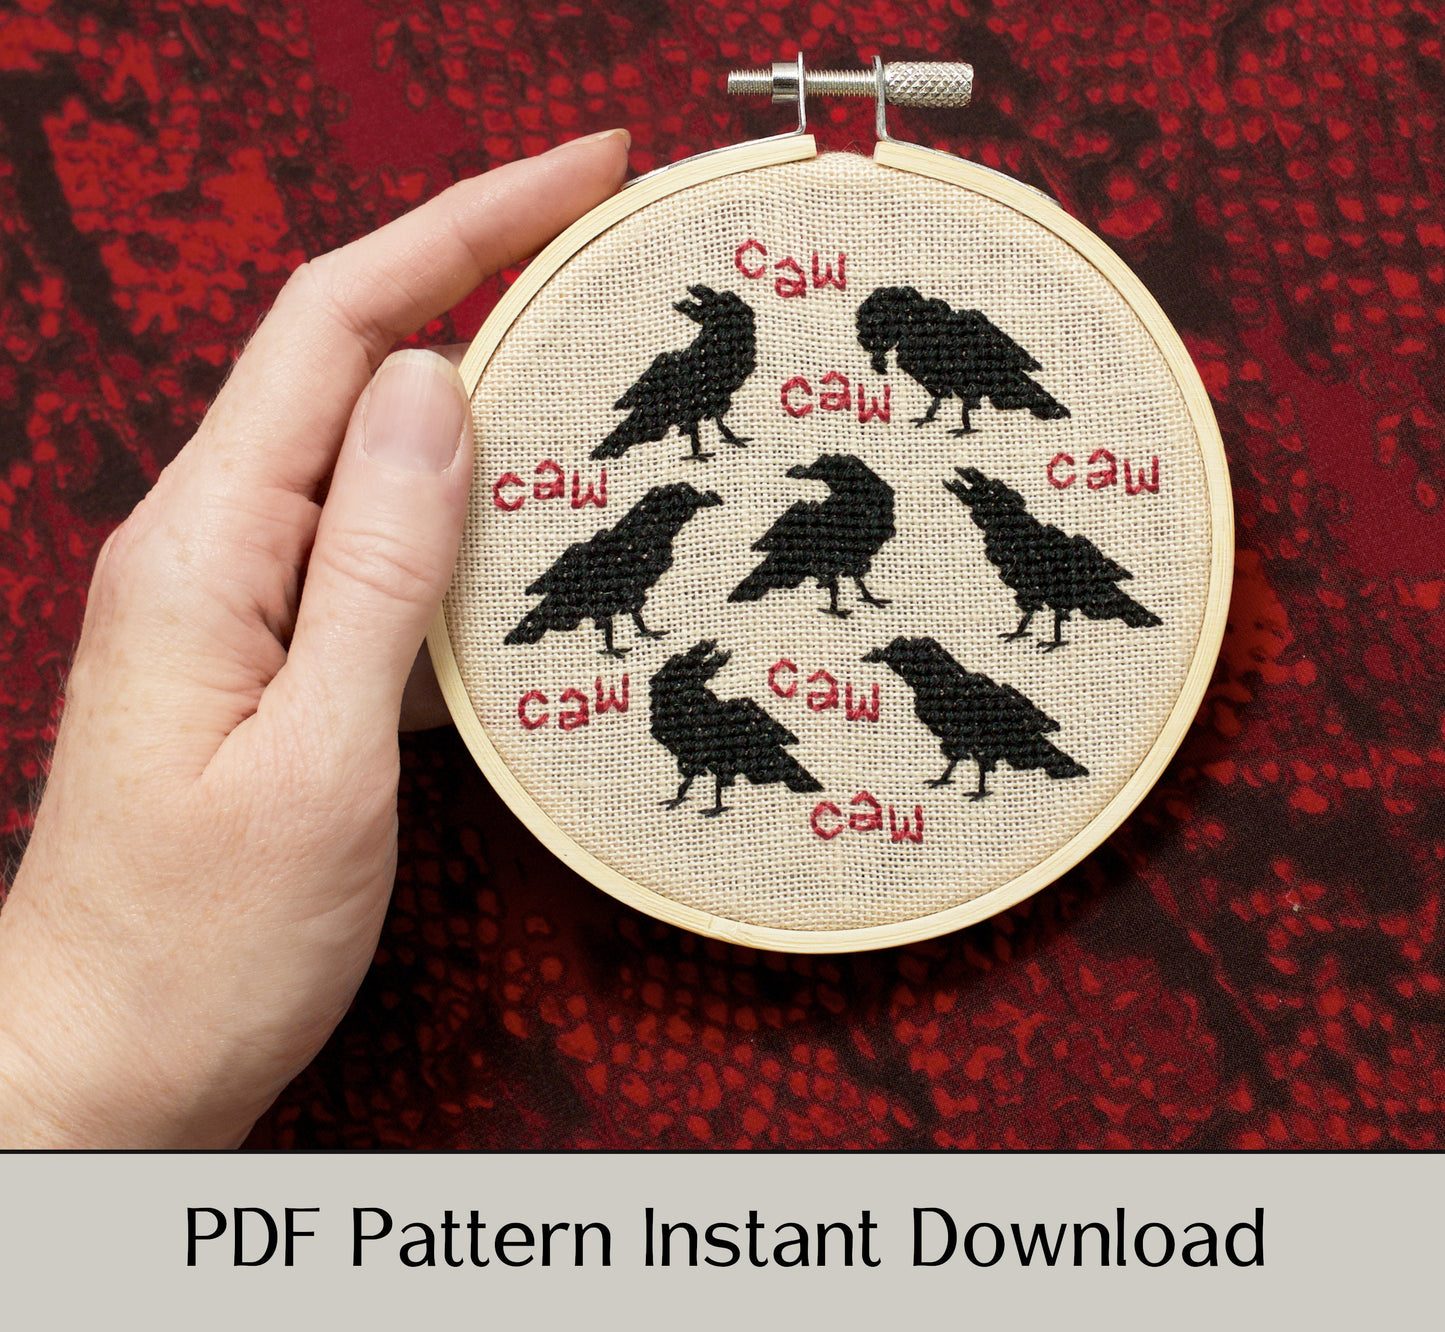 Caw Caw Caw - Digital PDF Cross Stitch Pattern